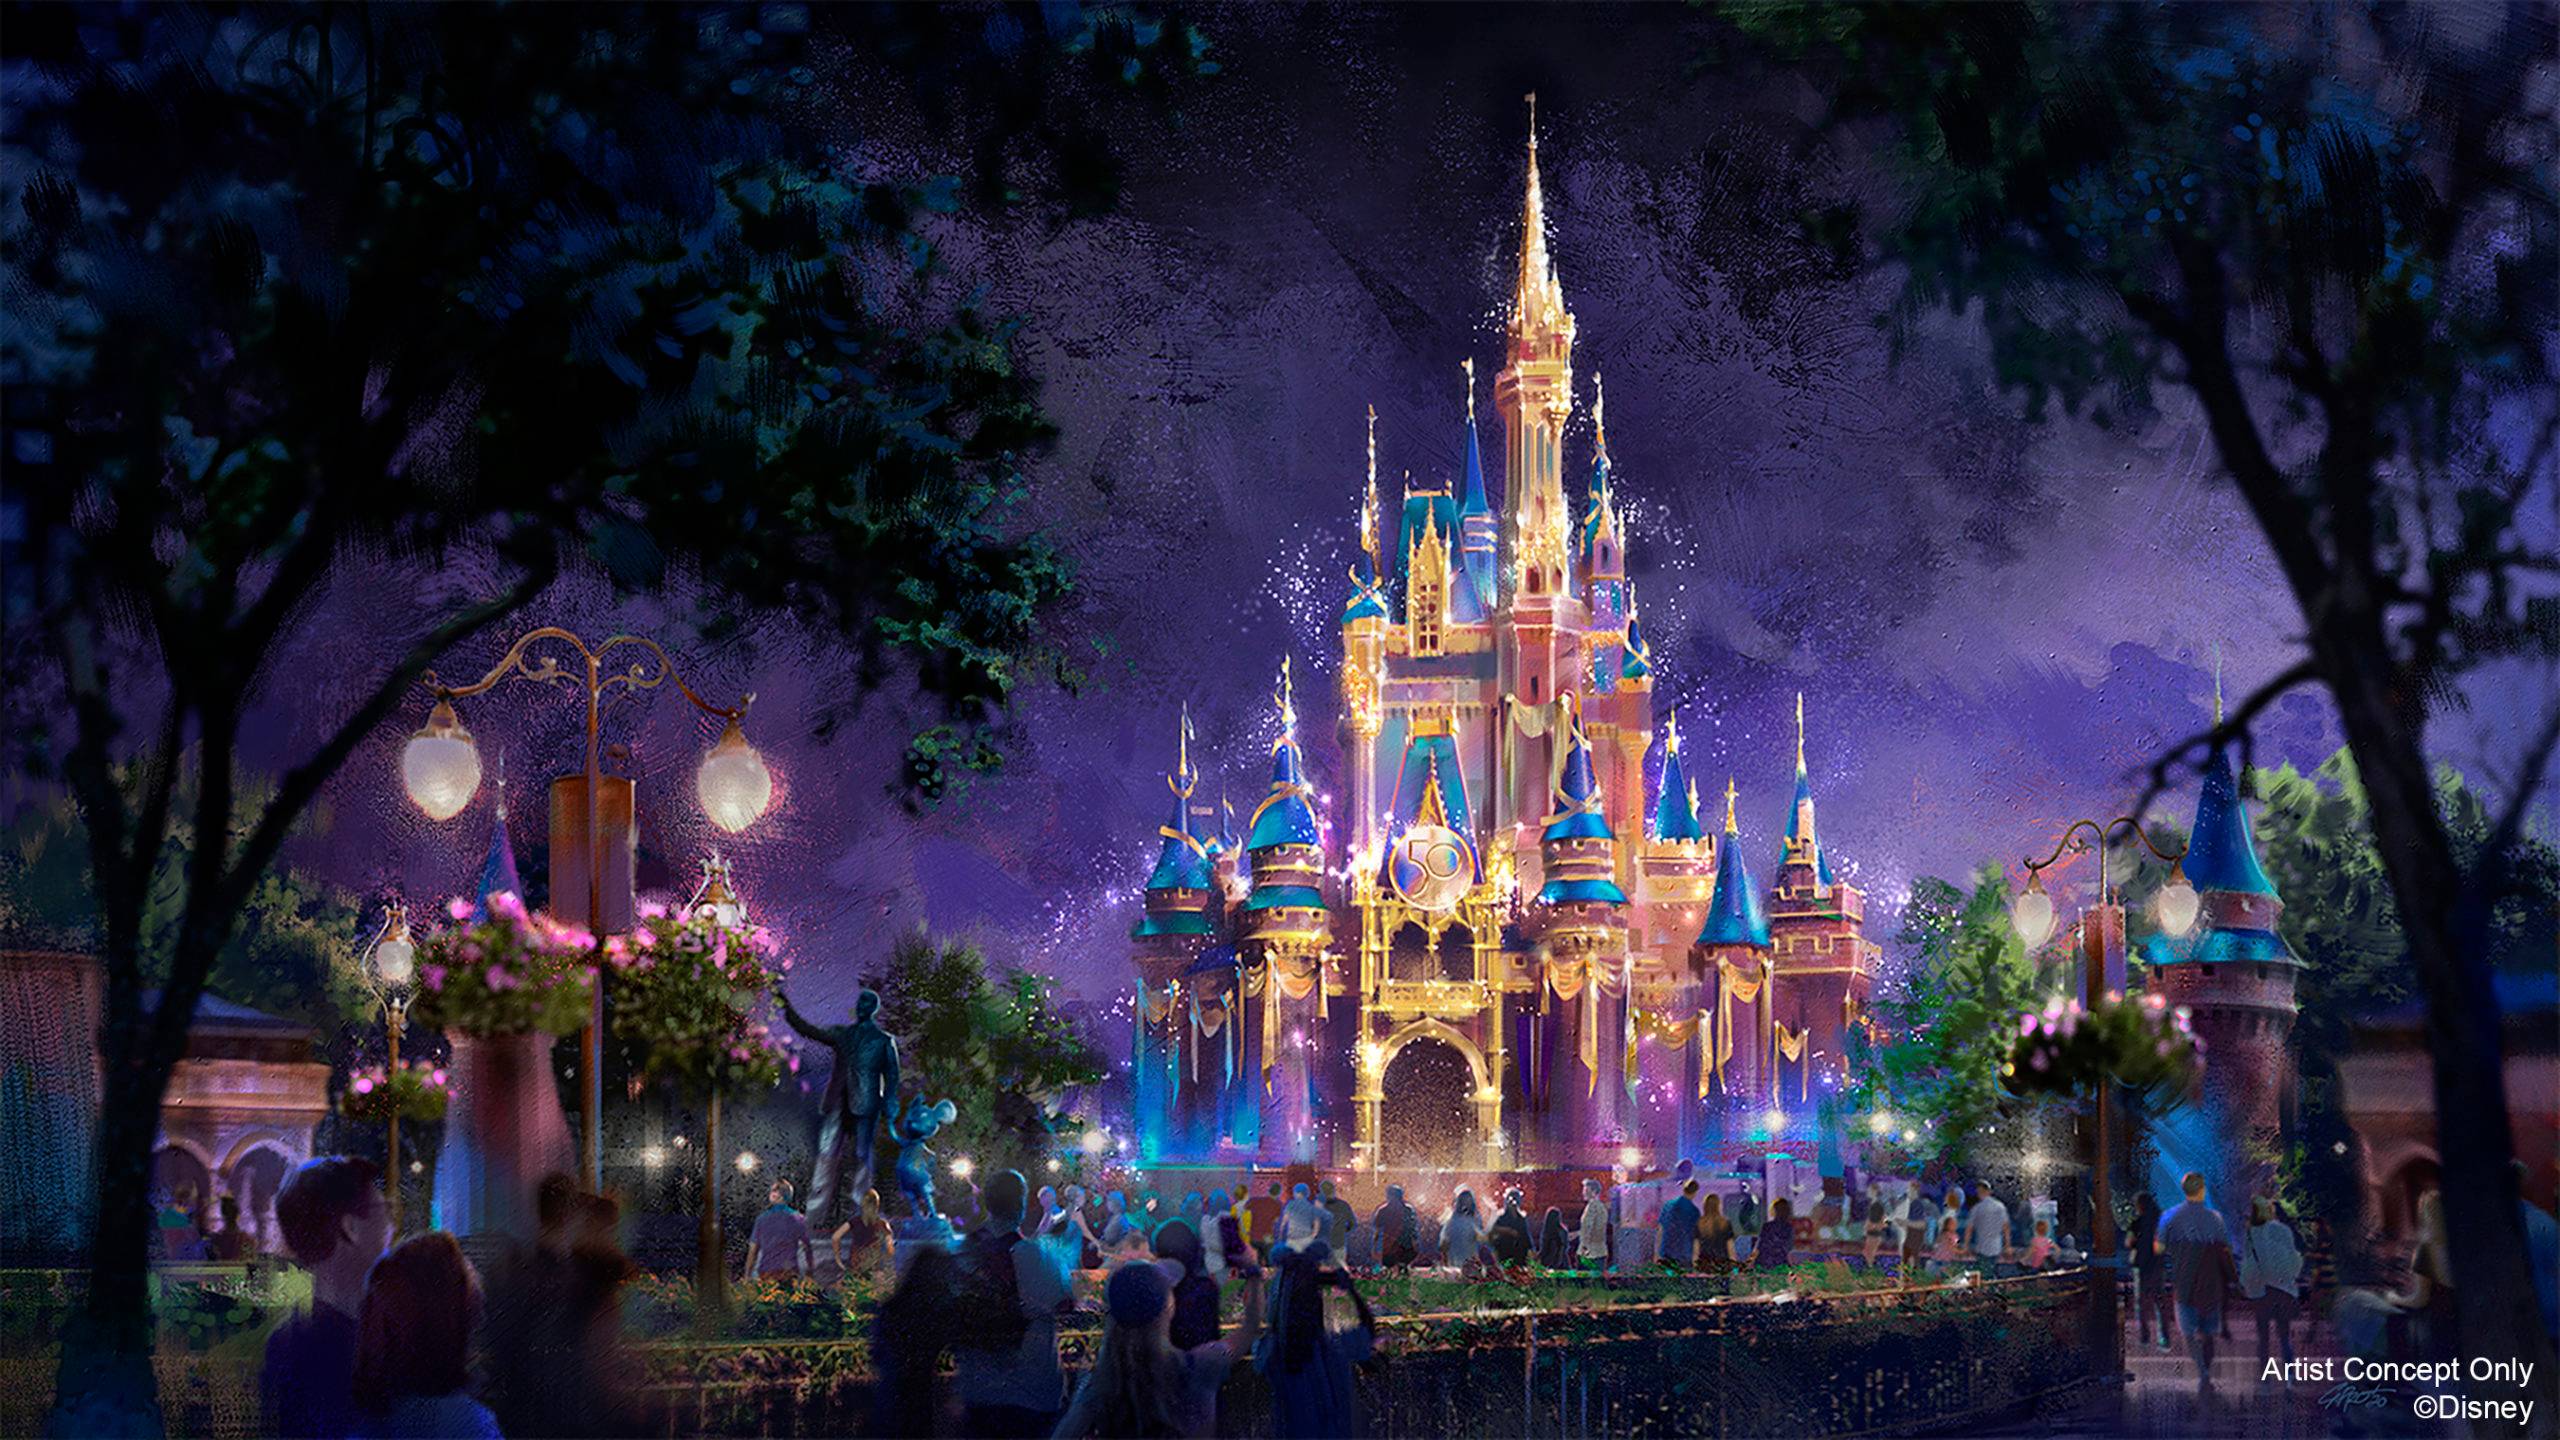 Cinderella Castle becomes a Beacon of Magic